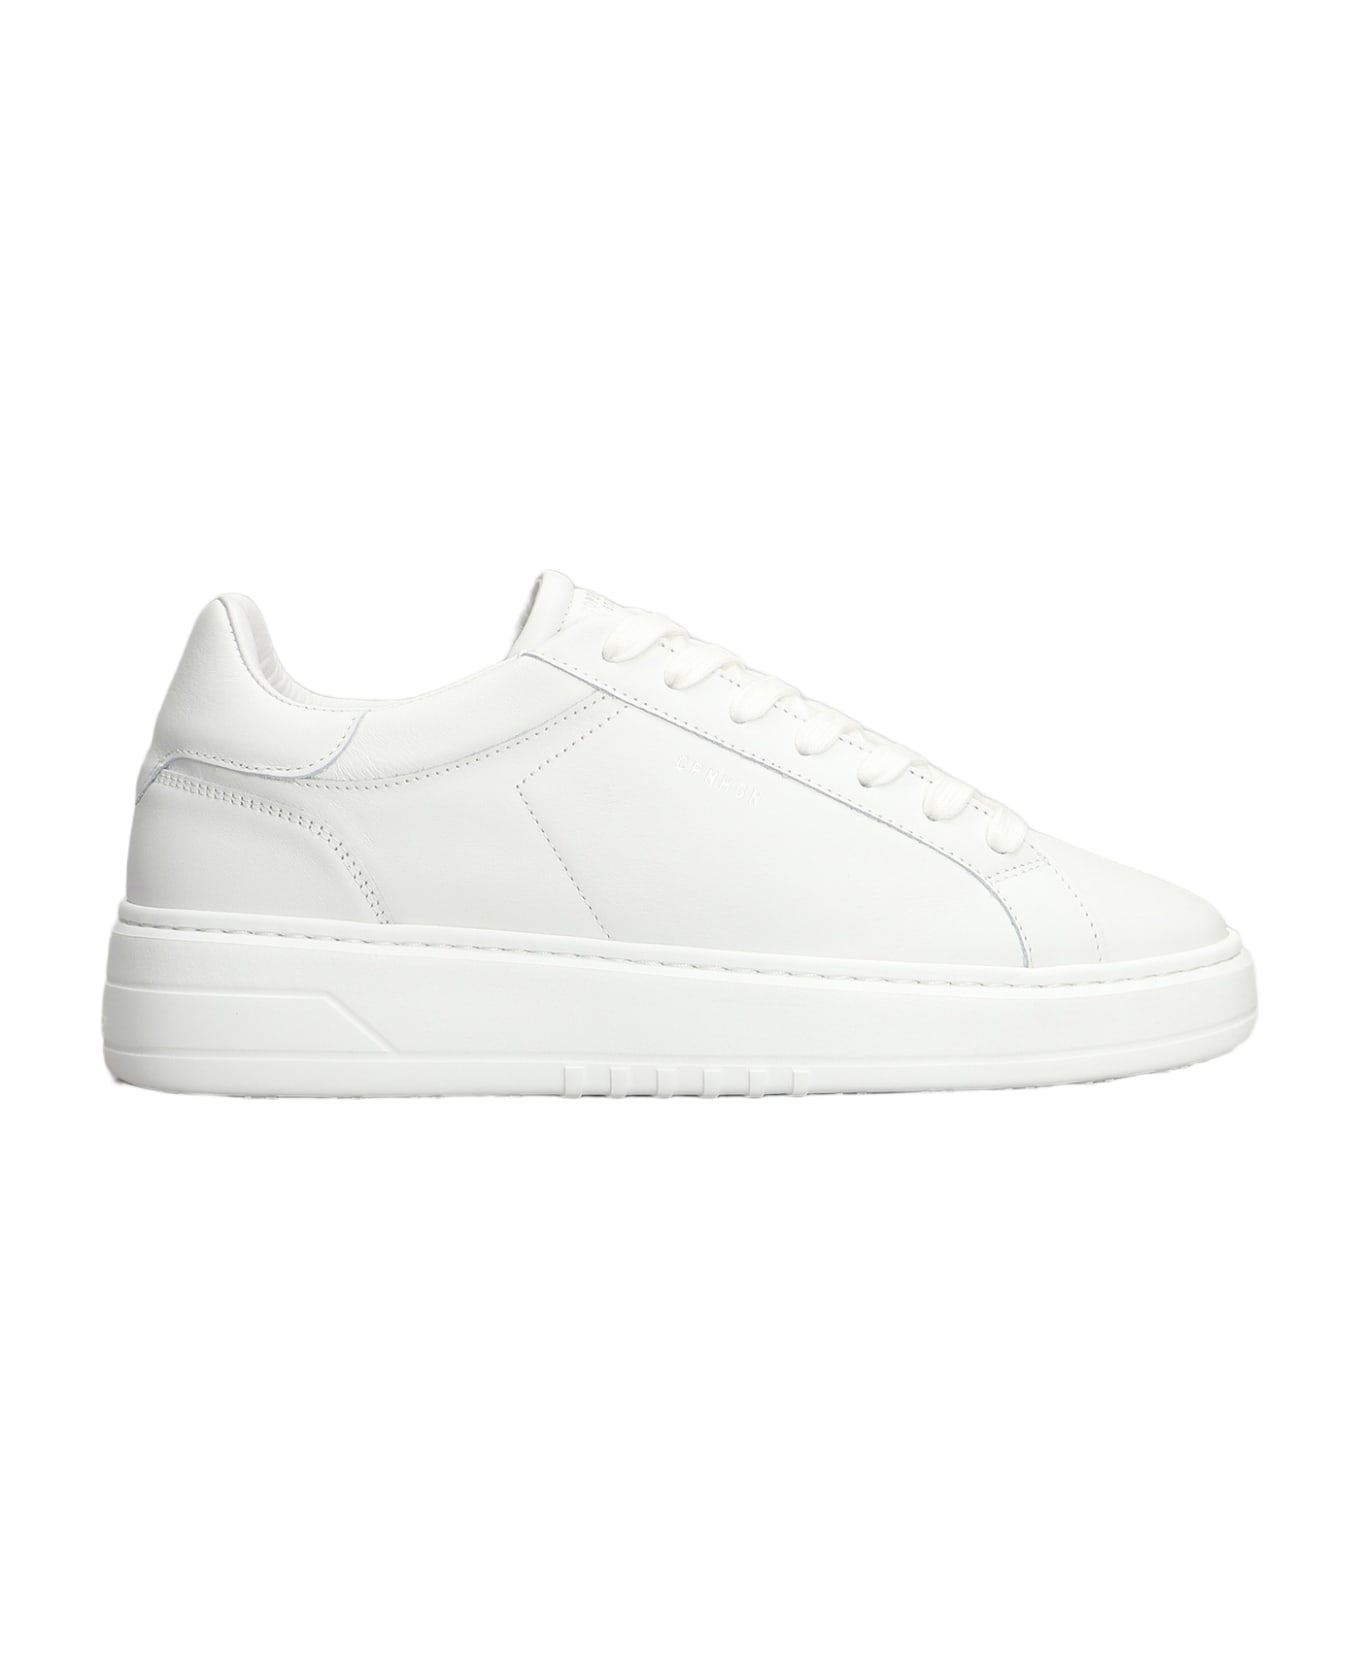 Copenhagen Sneakers In White Leather - white スニーカー